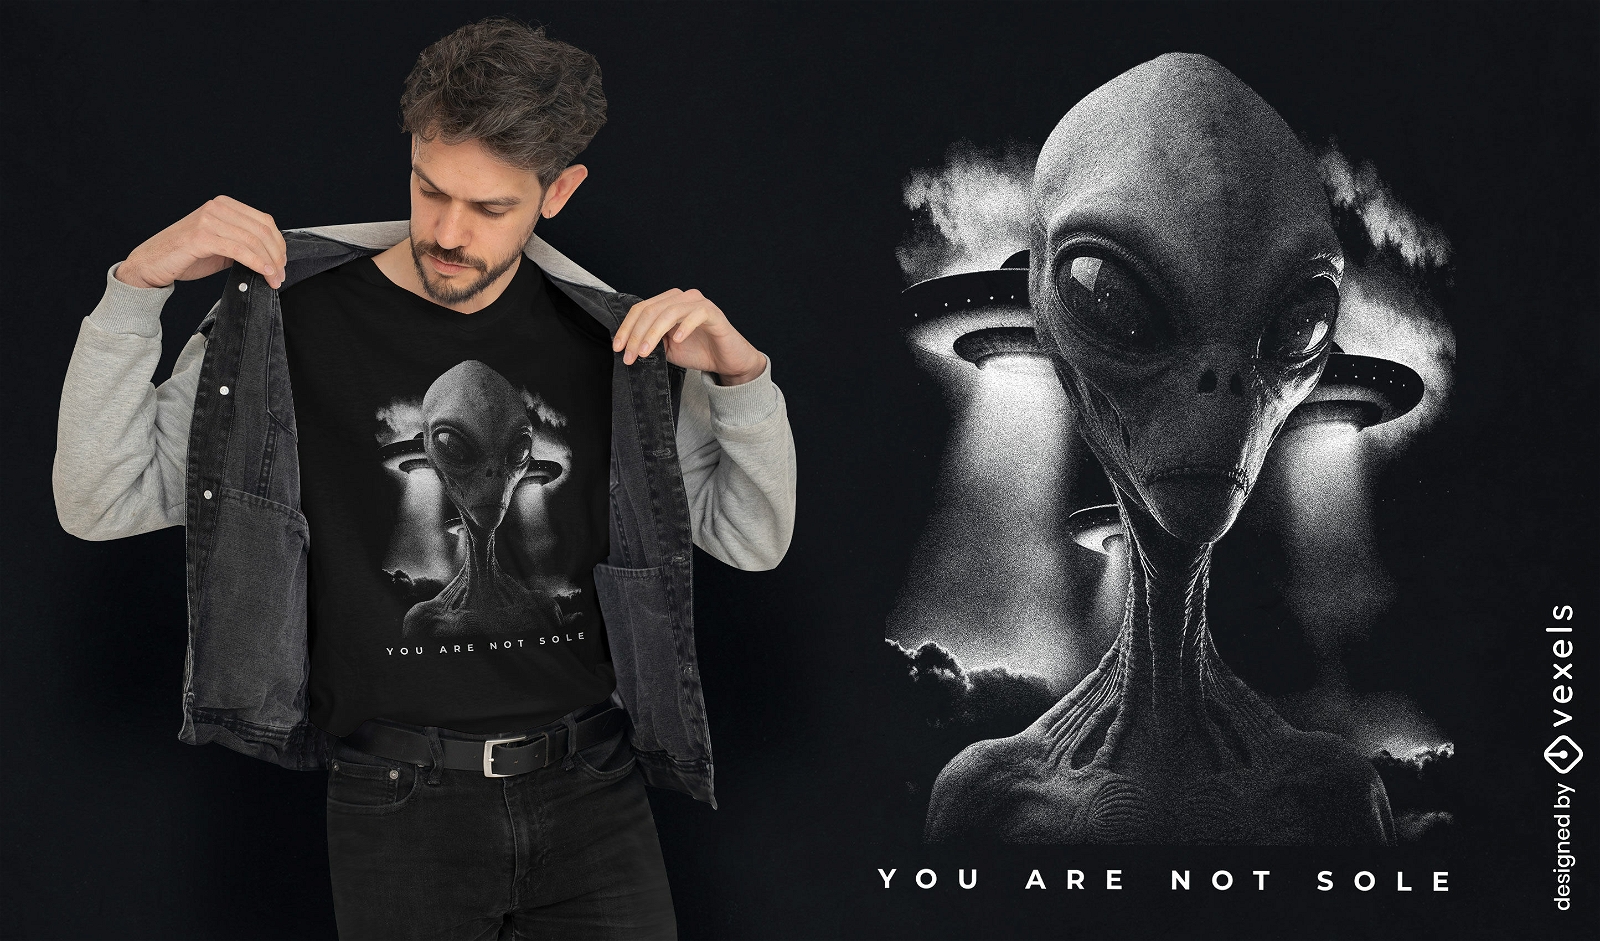 Diseño de camiseta de encuentro extraterrestre.